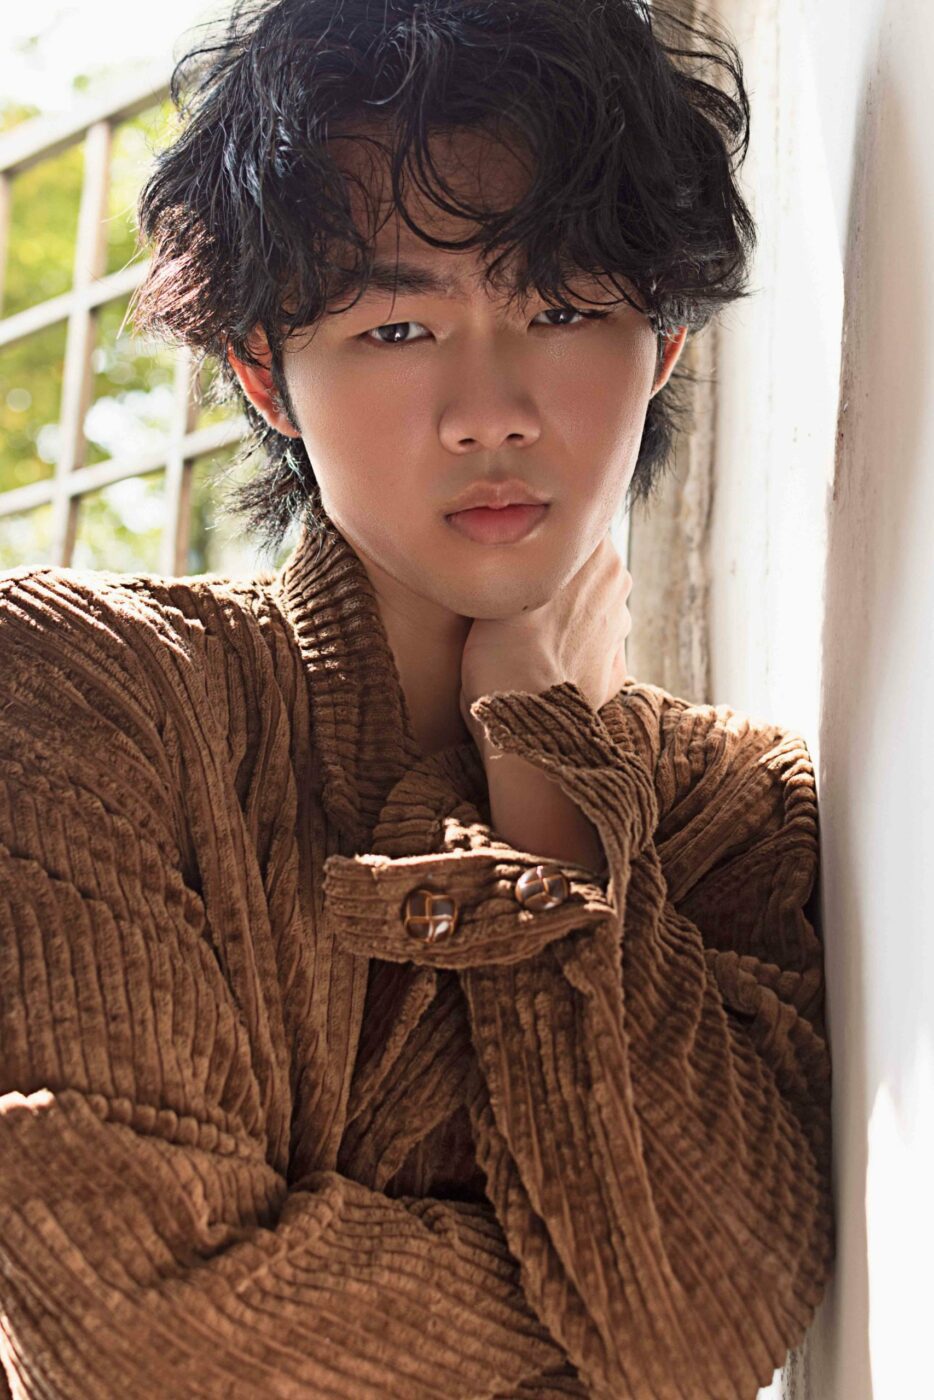 xu yi basic models male model singapore chinese asian